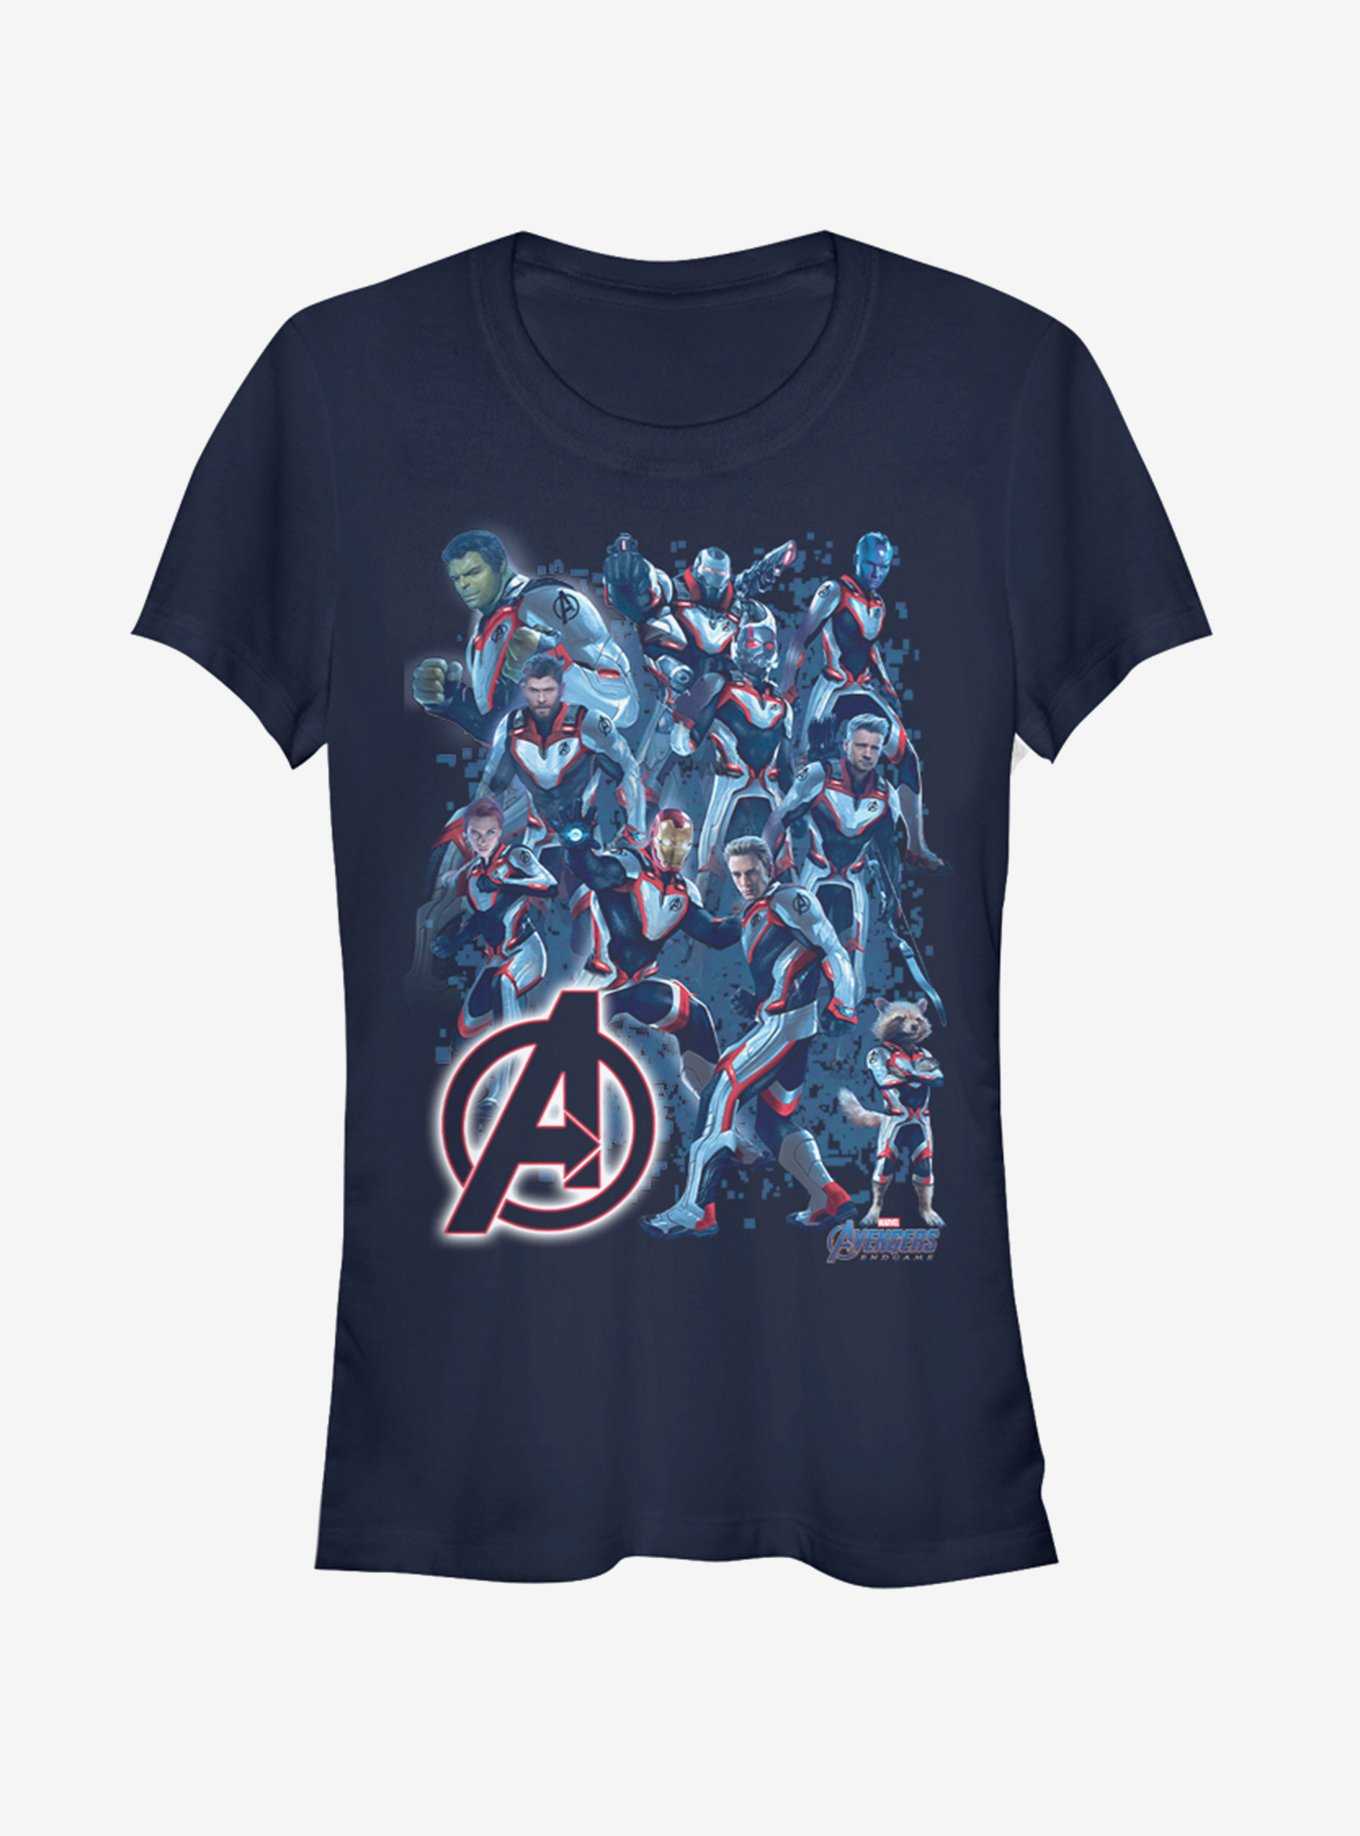 Marvel Avengers: Endgame Suit Group Girls Navy Blue T-Shirt, , hi-res